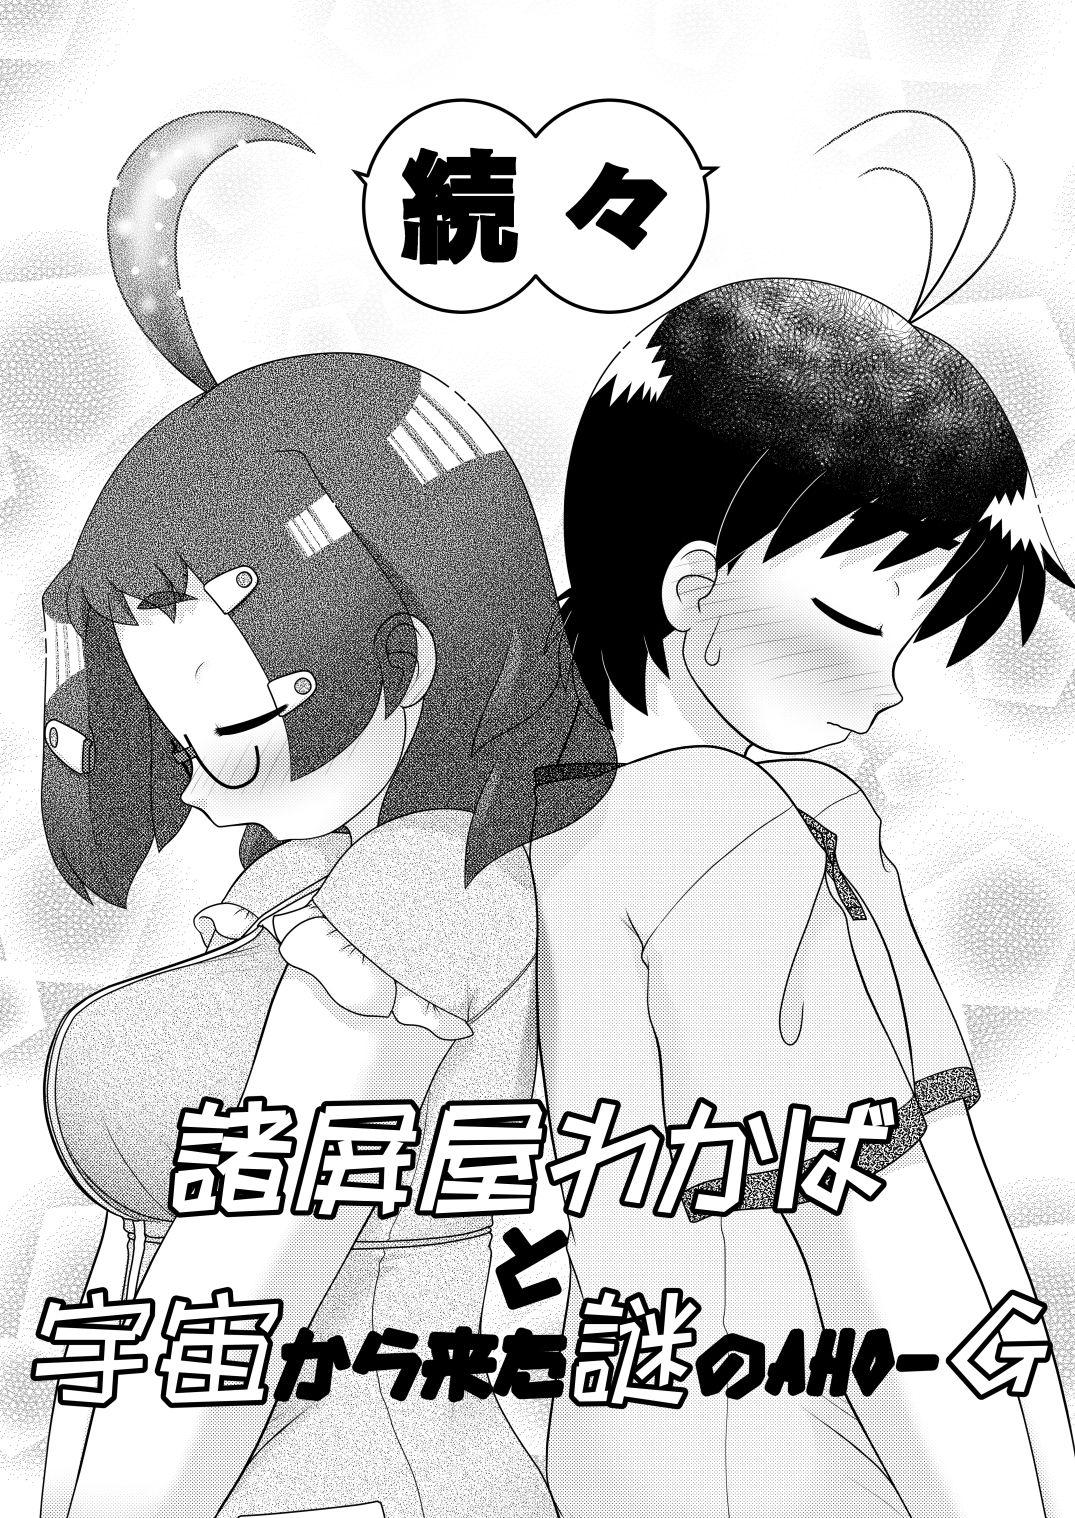 Hardcore [Lime Right] Zokuzoku Sho Hei-ya Wakaba to Uchuu kara Kita Nazo no AHO-G - Original Ruiva - Page 4